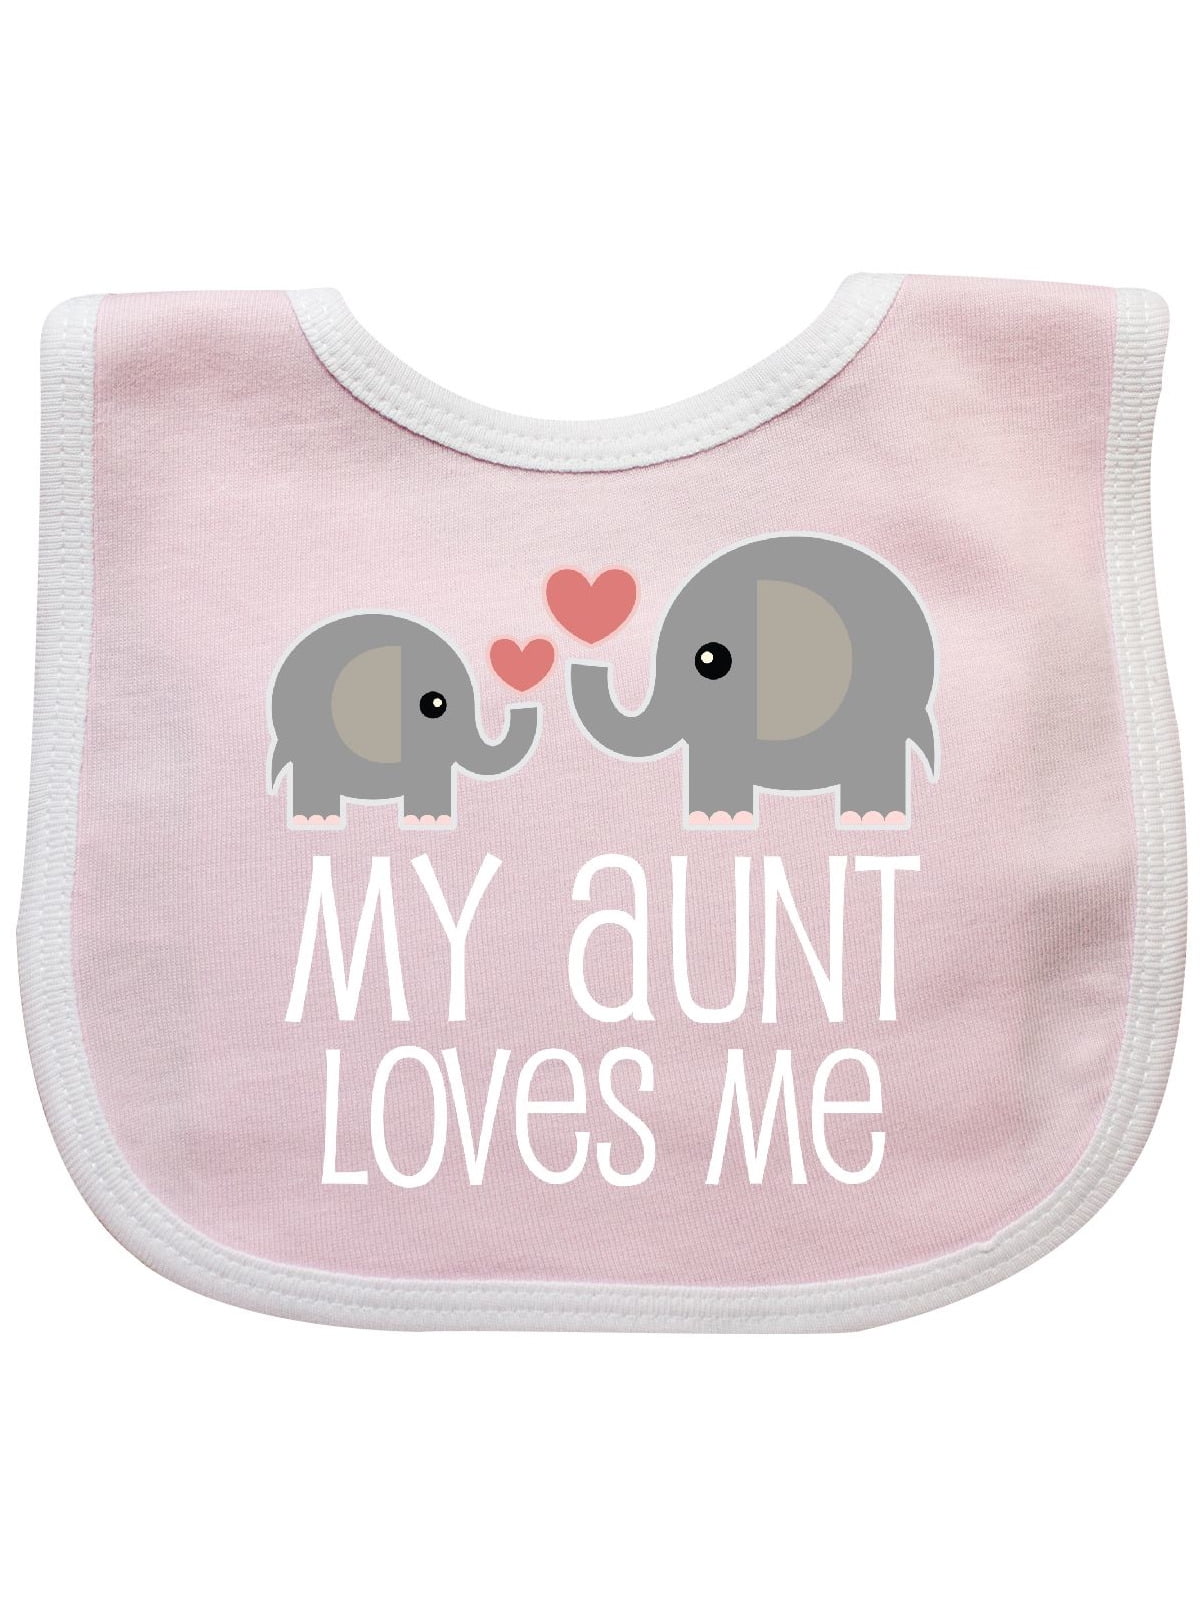 My Aunt Loves Me Niece Nephew Elephant Baby Bib - Walmart.com